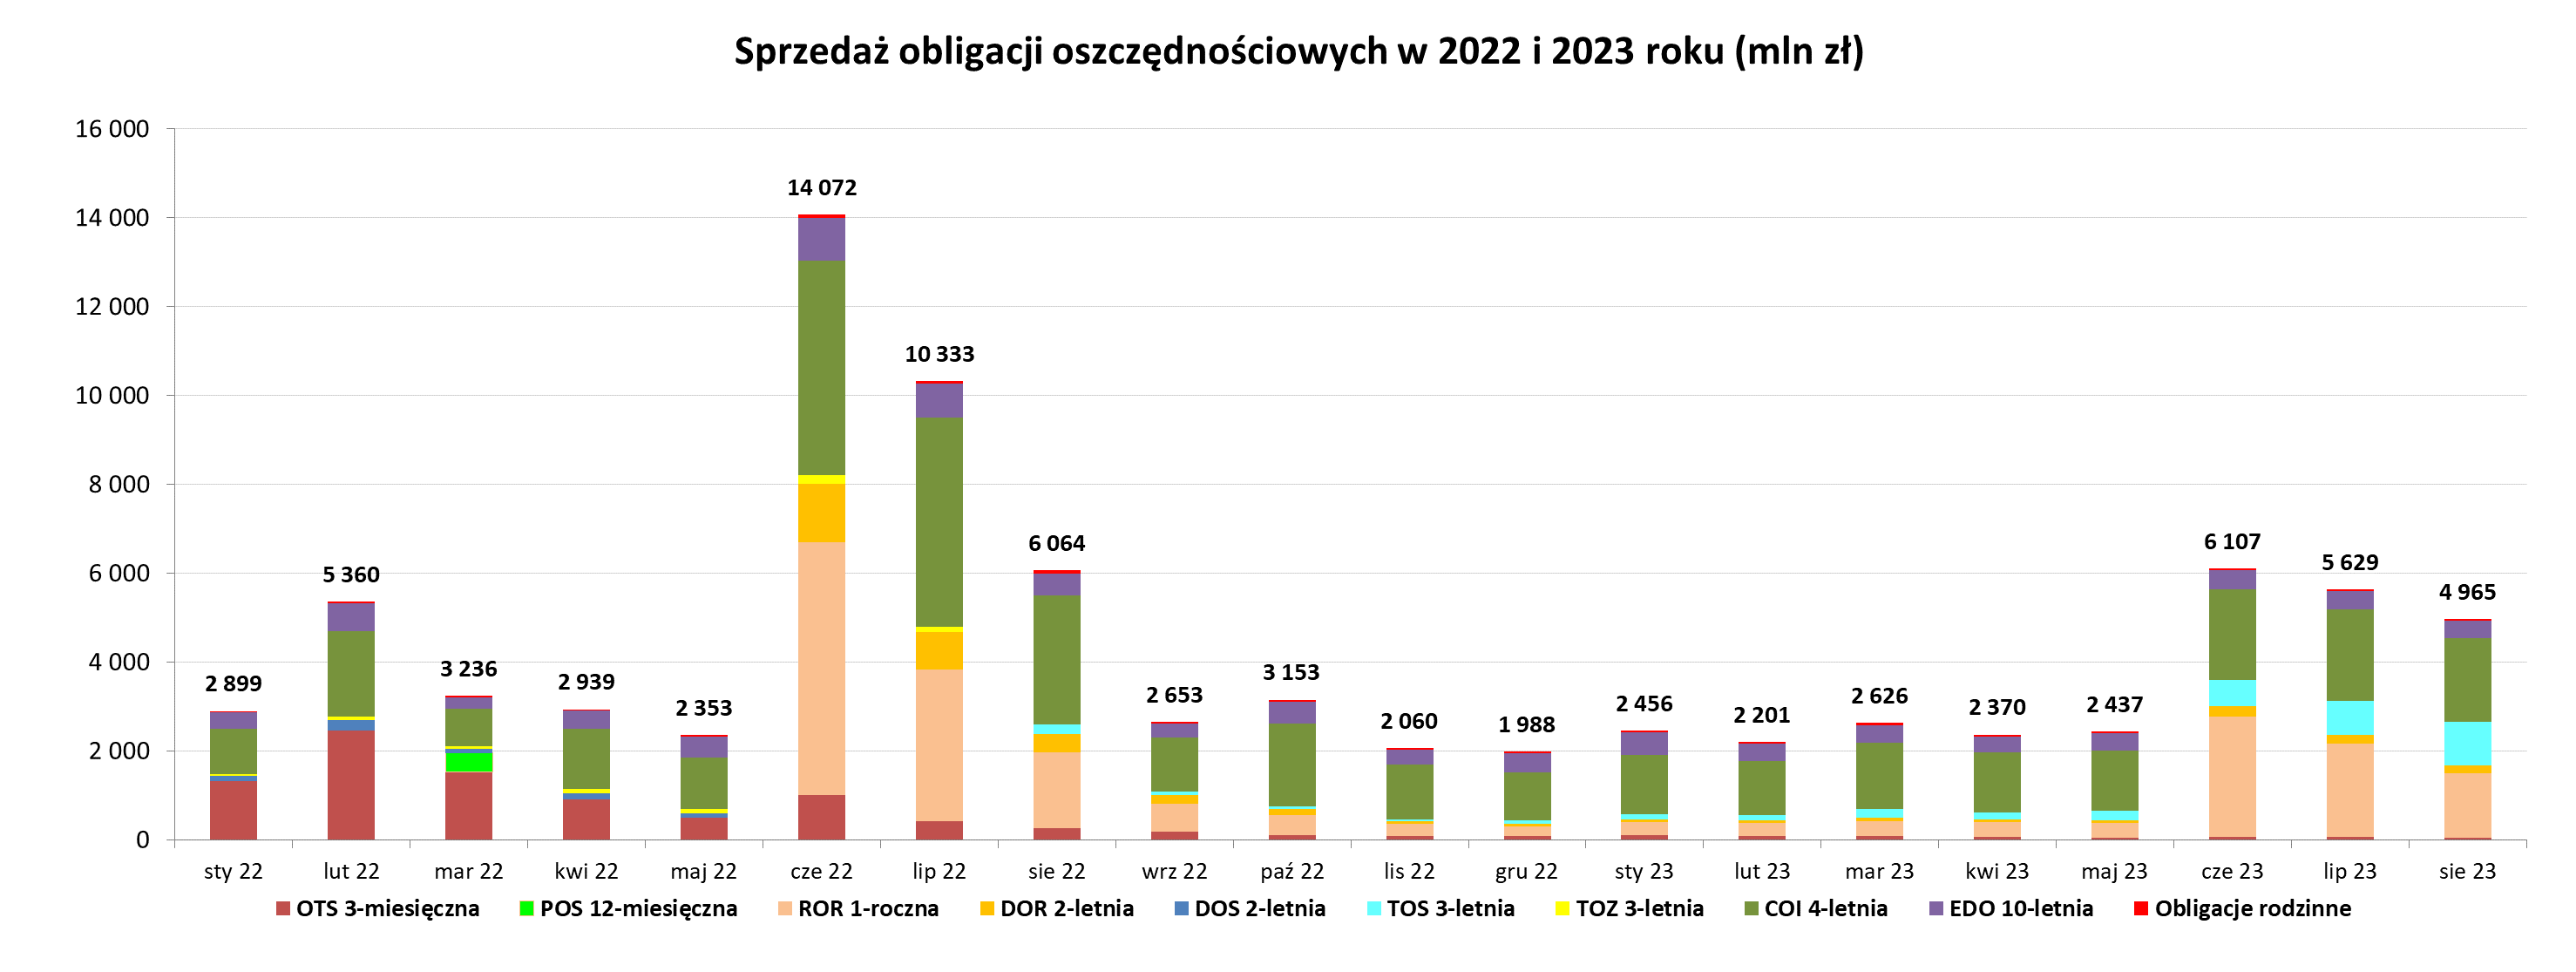 Wykres słupkowy przedstawiający sprzedaż obligacji oszczędnościowych w 2022 i 2023 roku (mln zł)